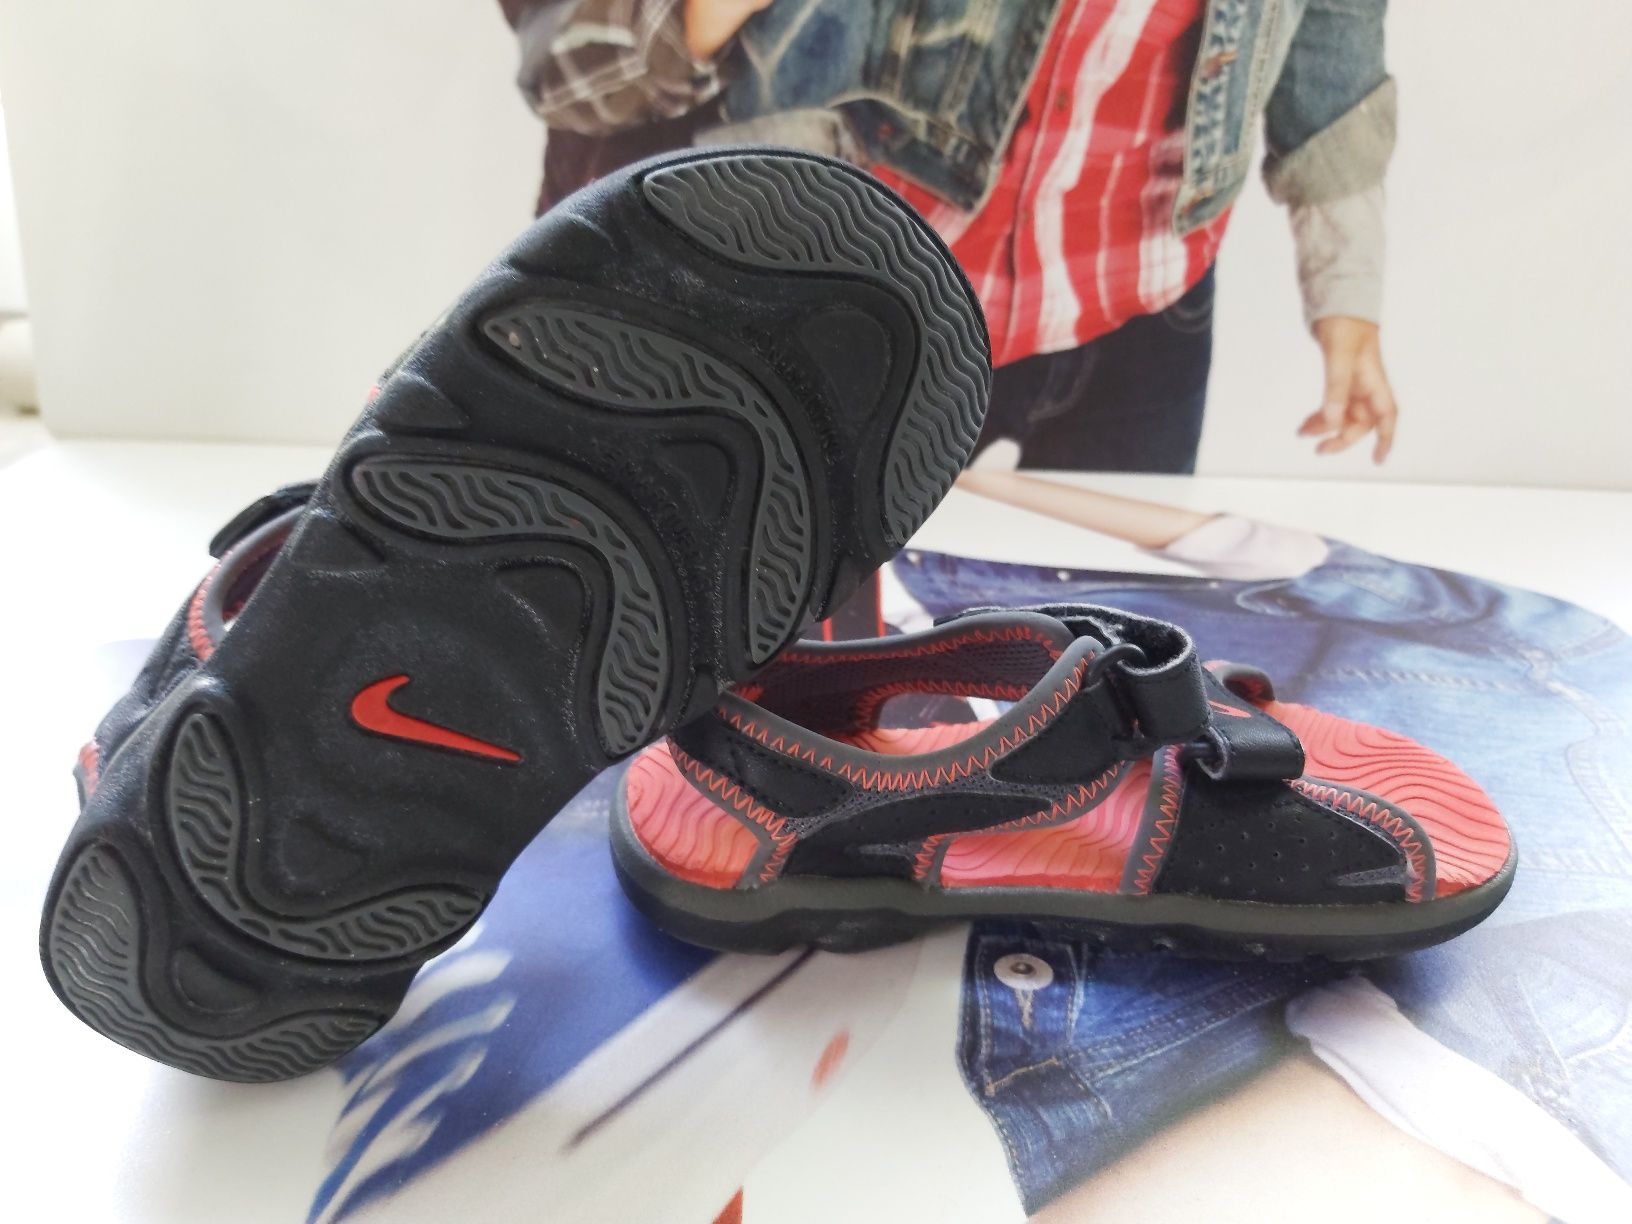 Sandały Nike dziecięce rozmiar XS 15-17cm